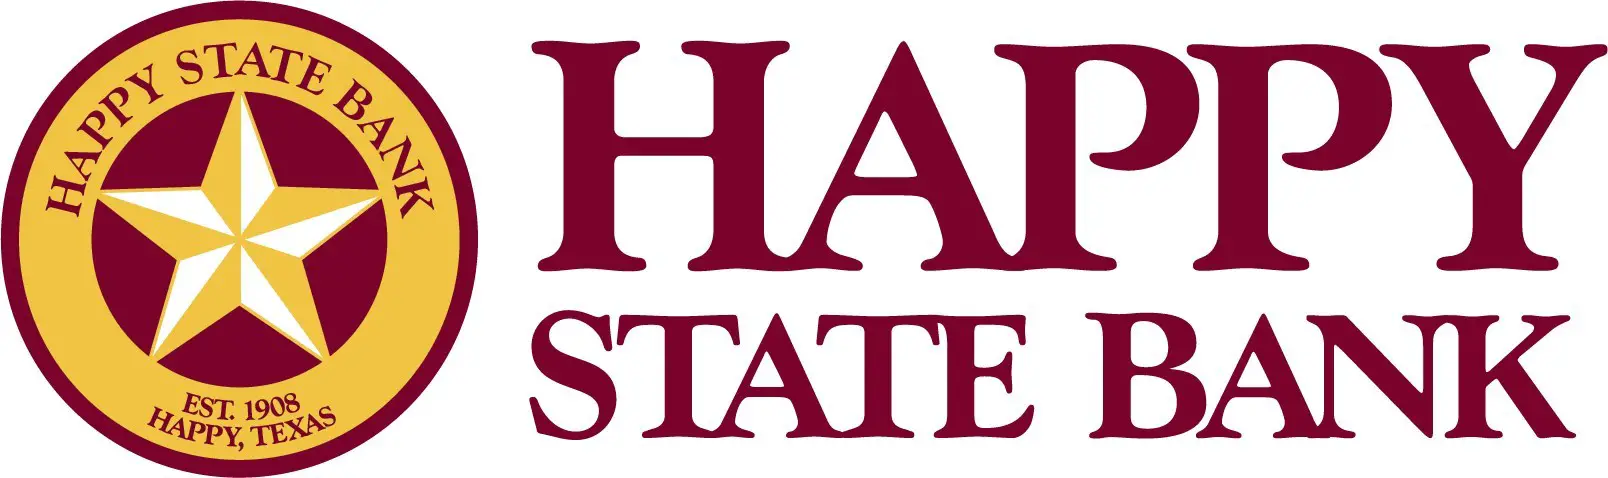 Logotipo del banco estatal feliz